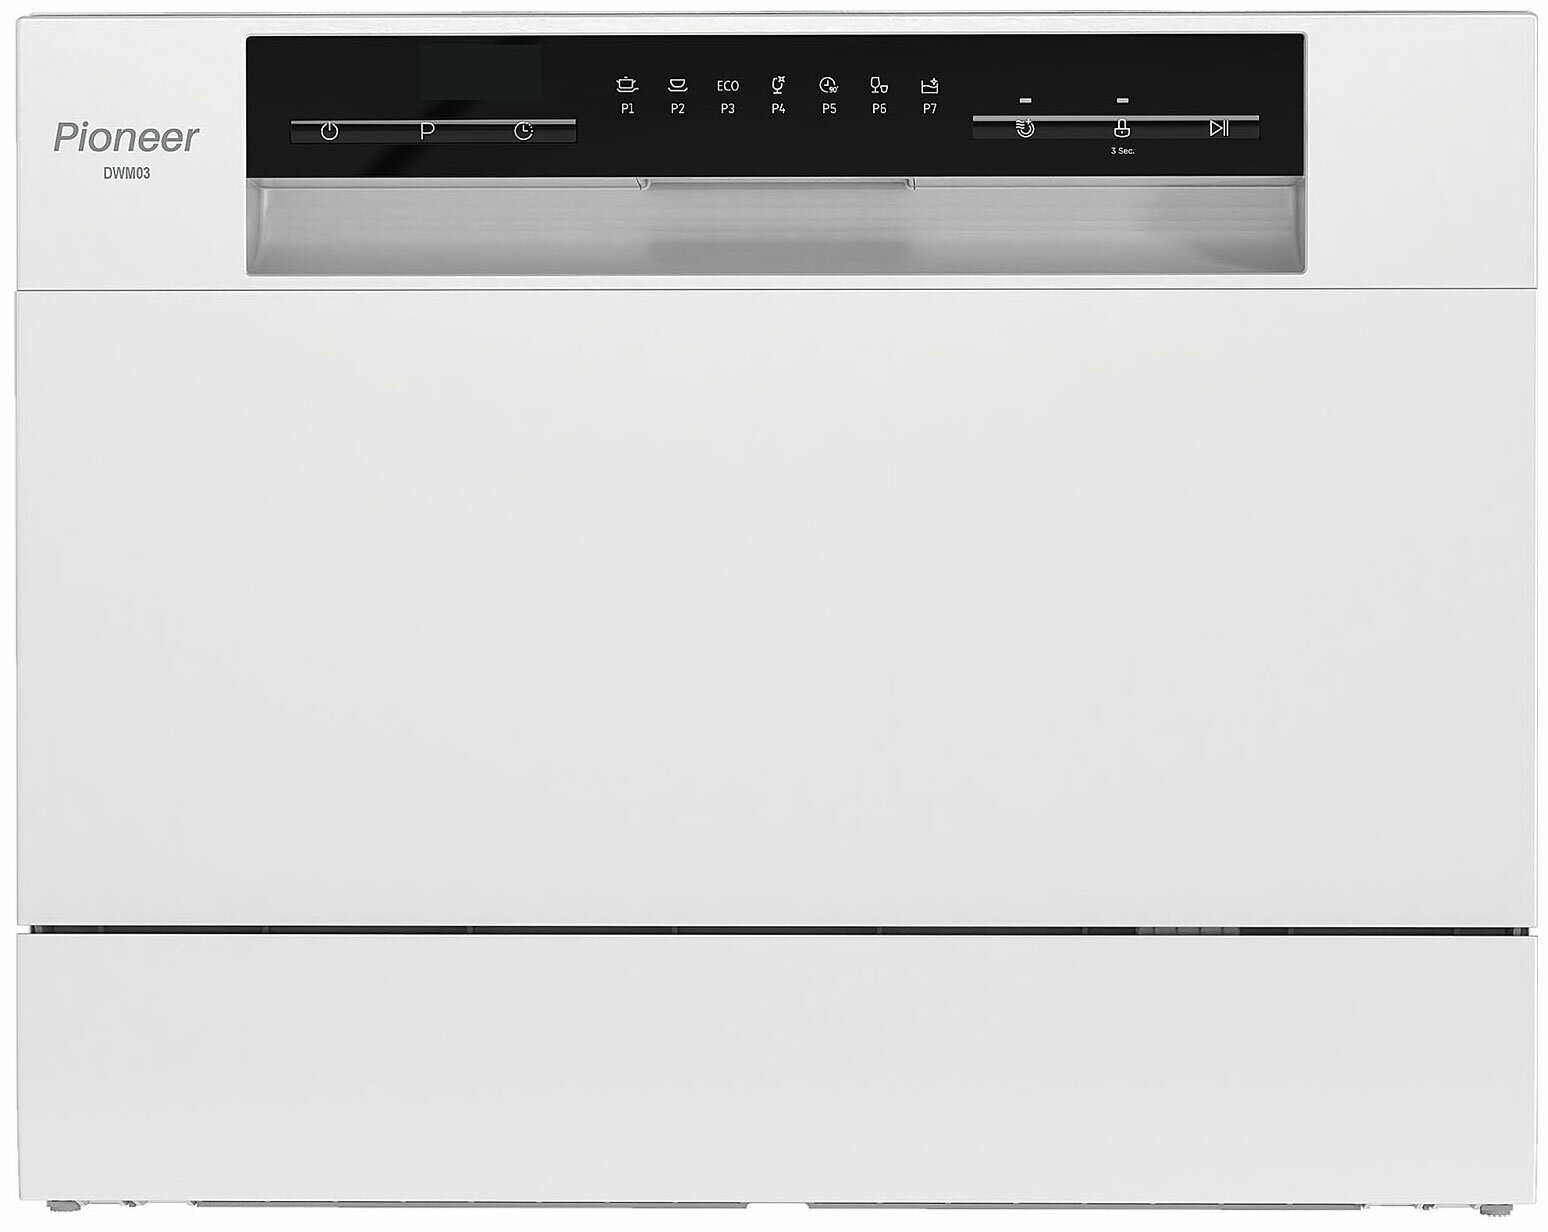 Компактная посудомоечная машина Pioneer DWM03